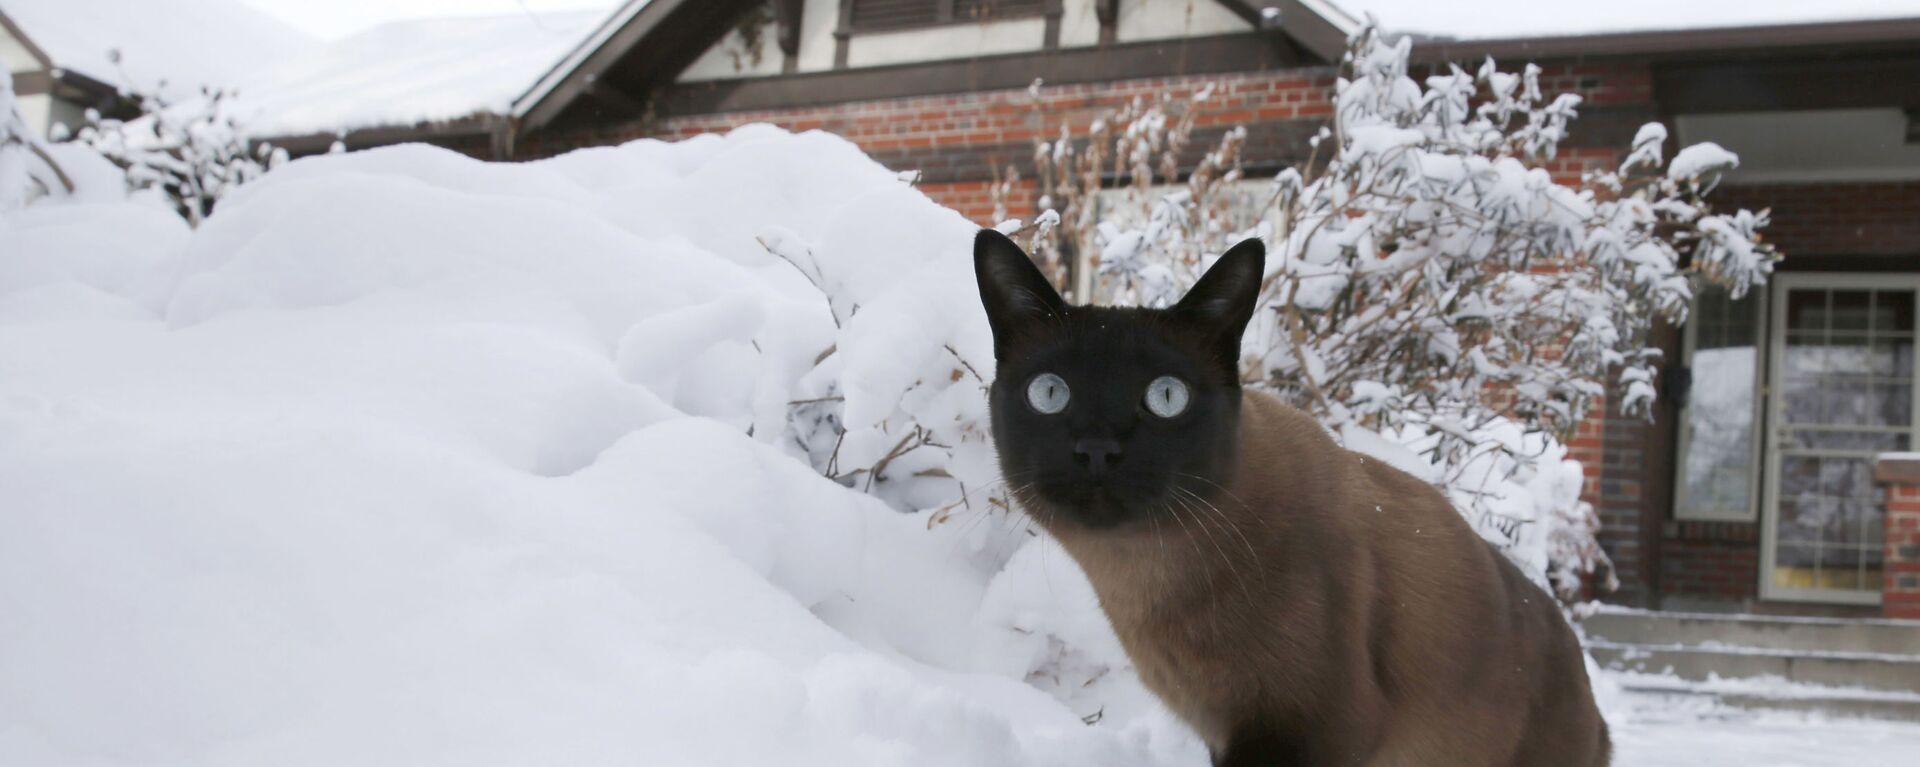 Кот гуляет во дворе после снежной бури - Sputnik Молдова, 1920, 12.12.2021